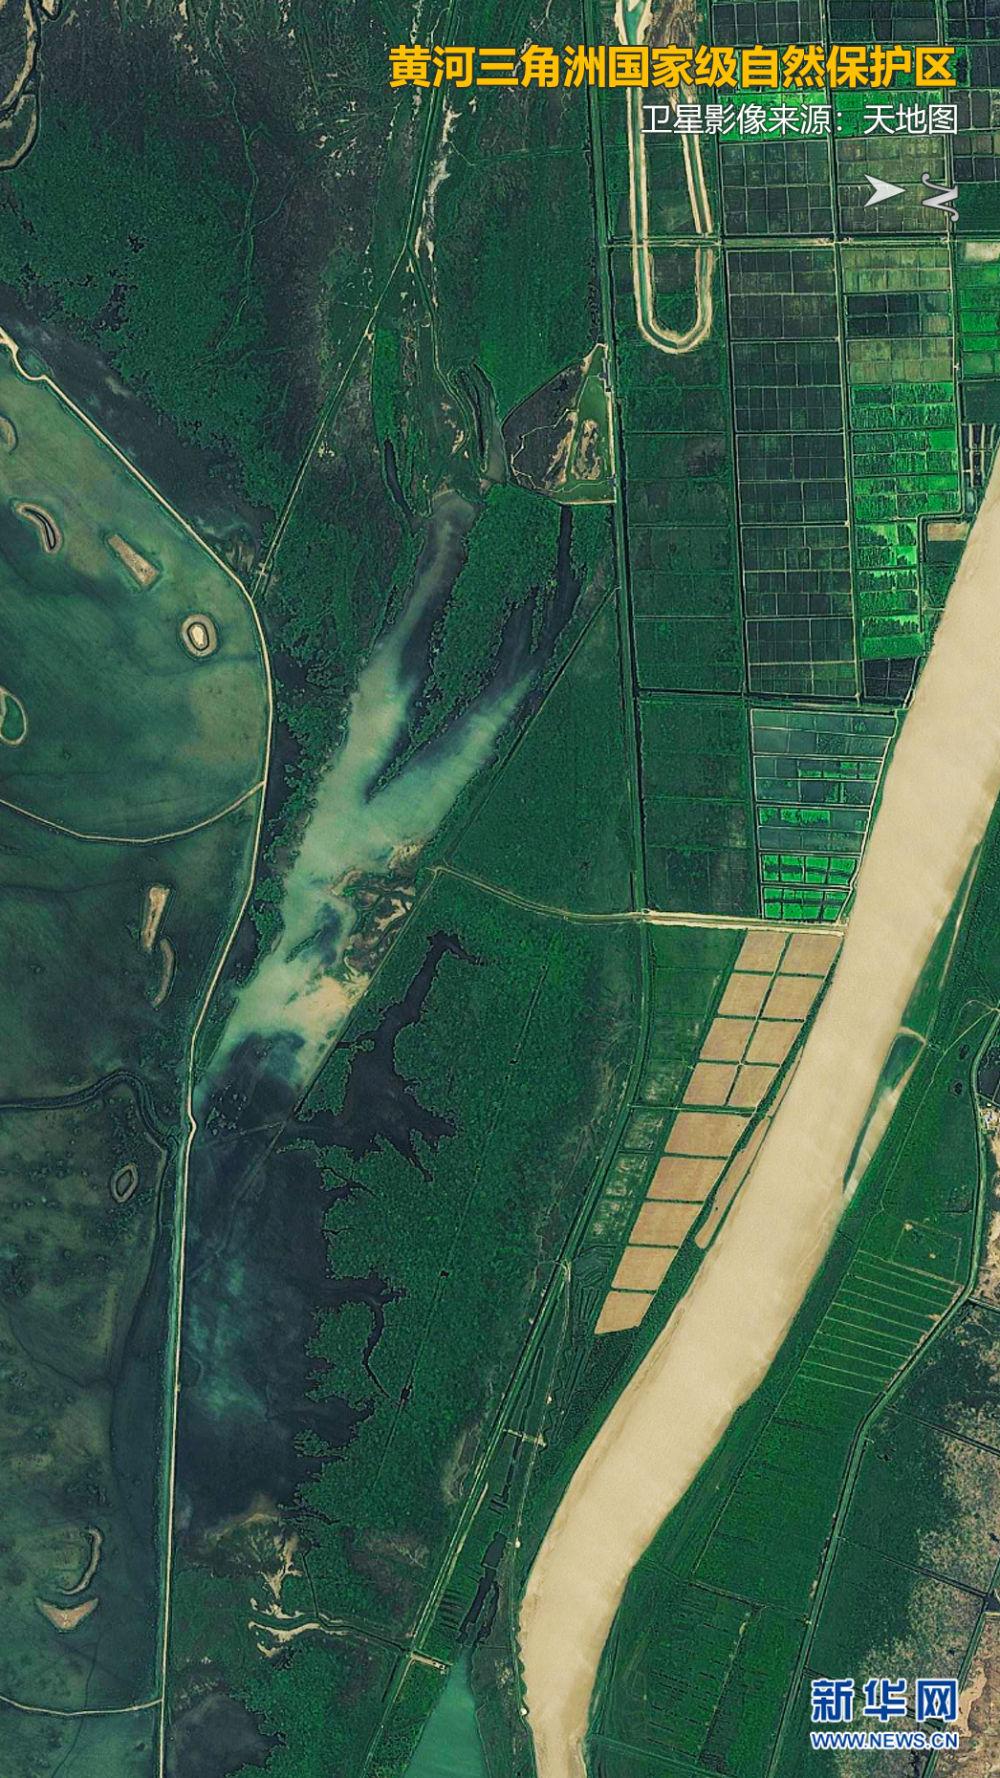 新闻中心>中国>中国聚焦> 卫星视角下的黄河三角洲国家级自然保护区.